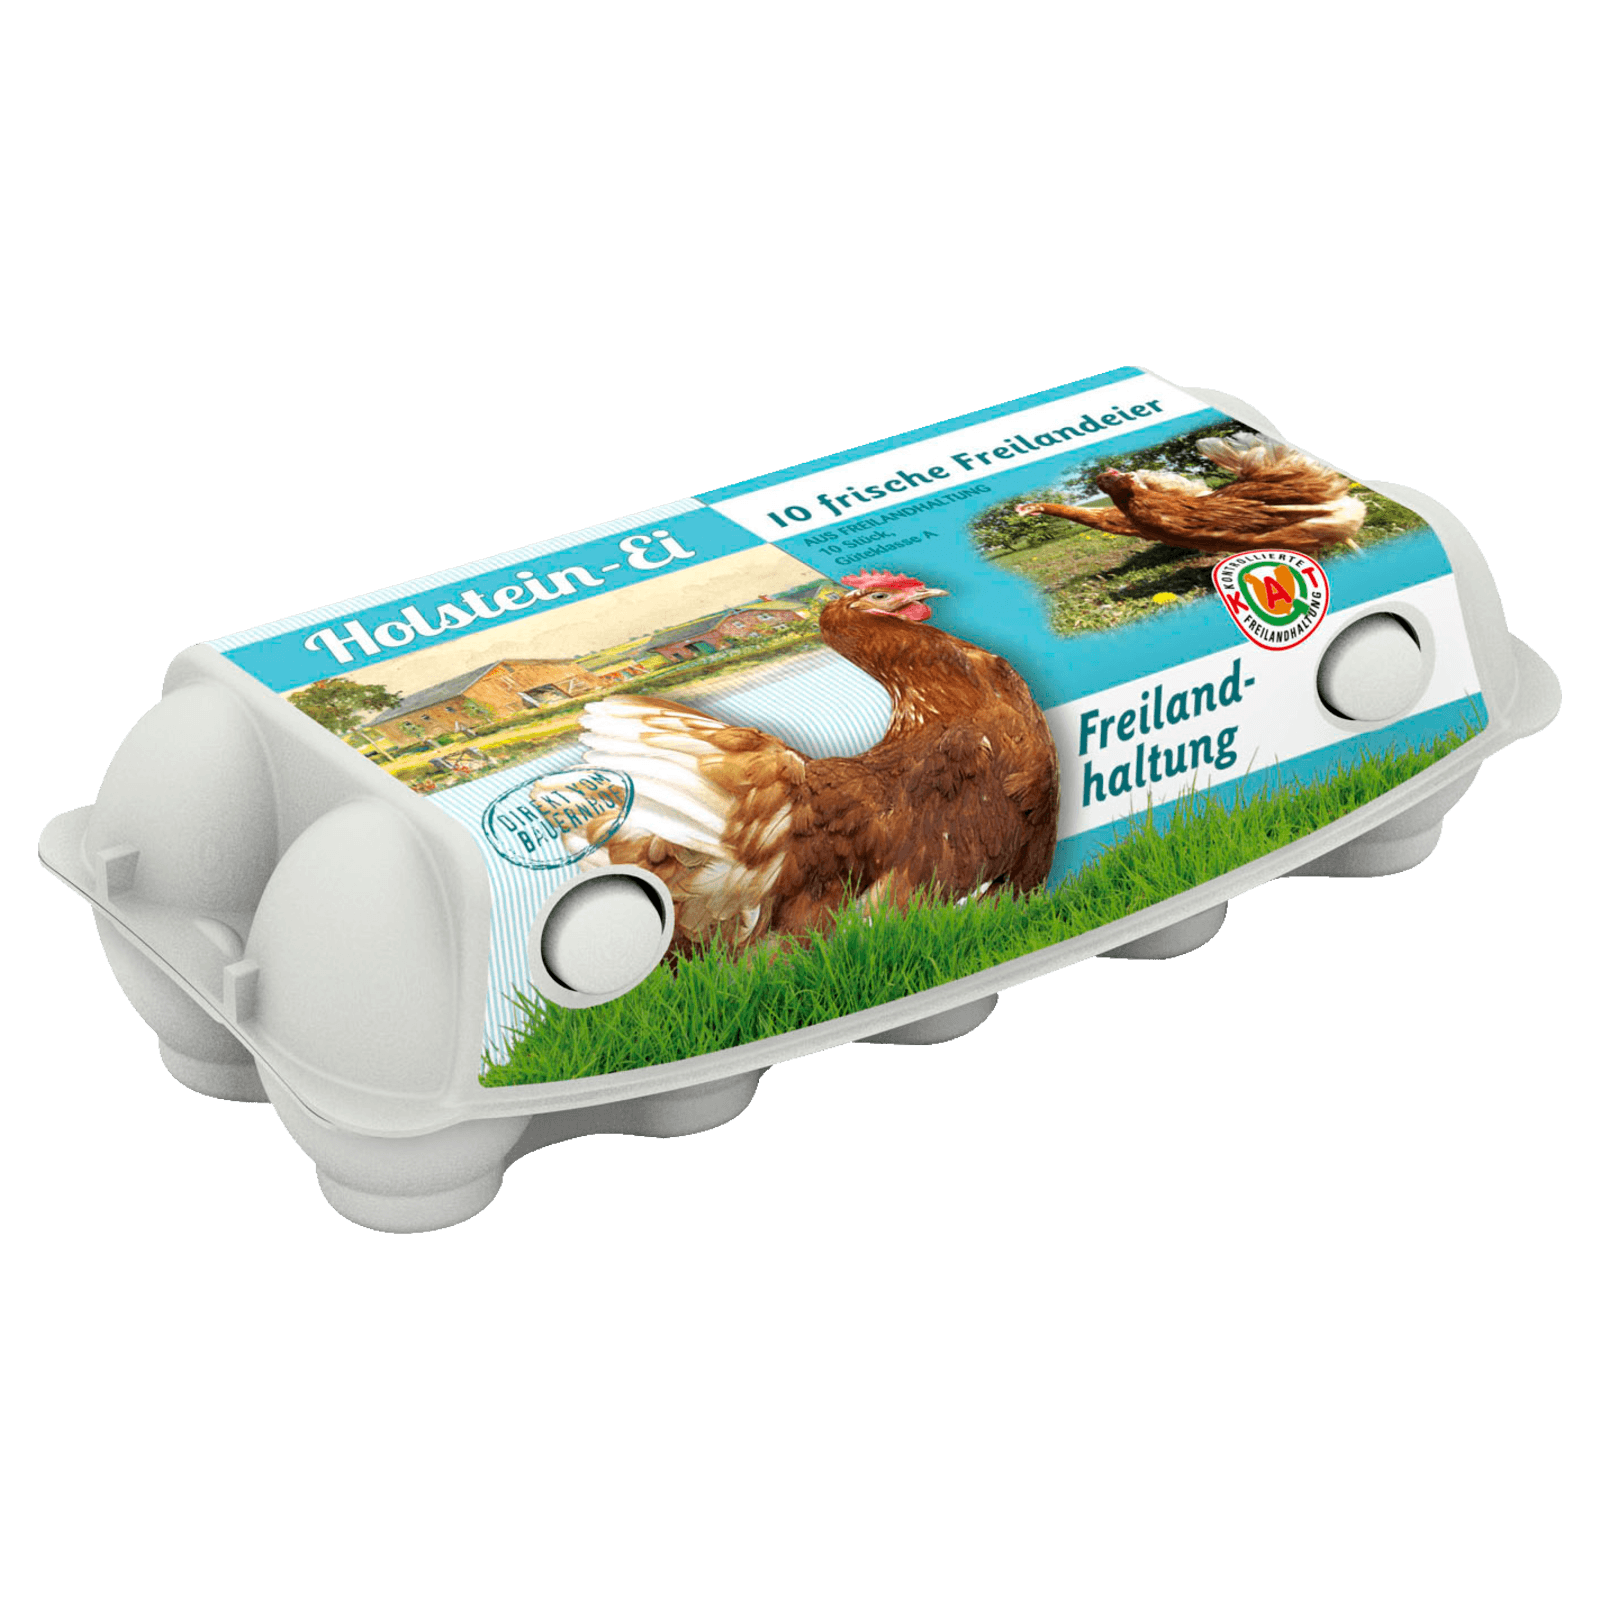 Holstein Eier Freilandhaltung 10 Stück  für 3.99 EUR